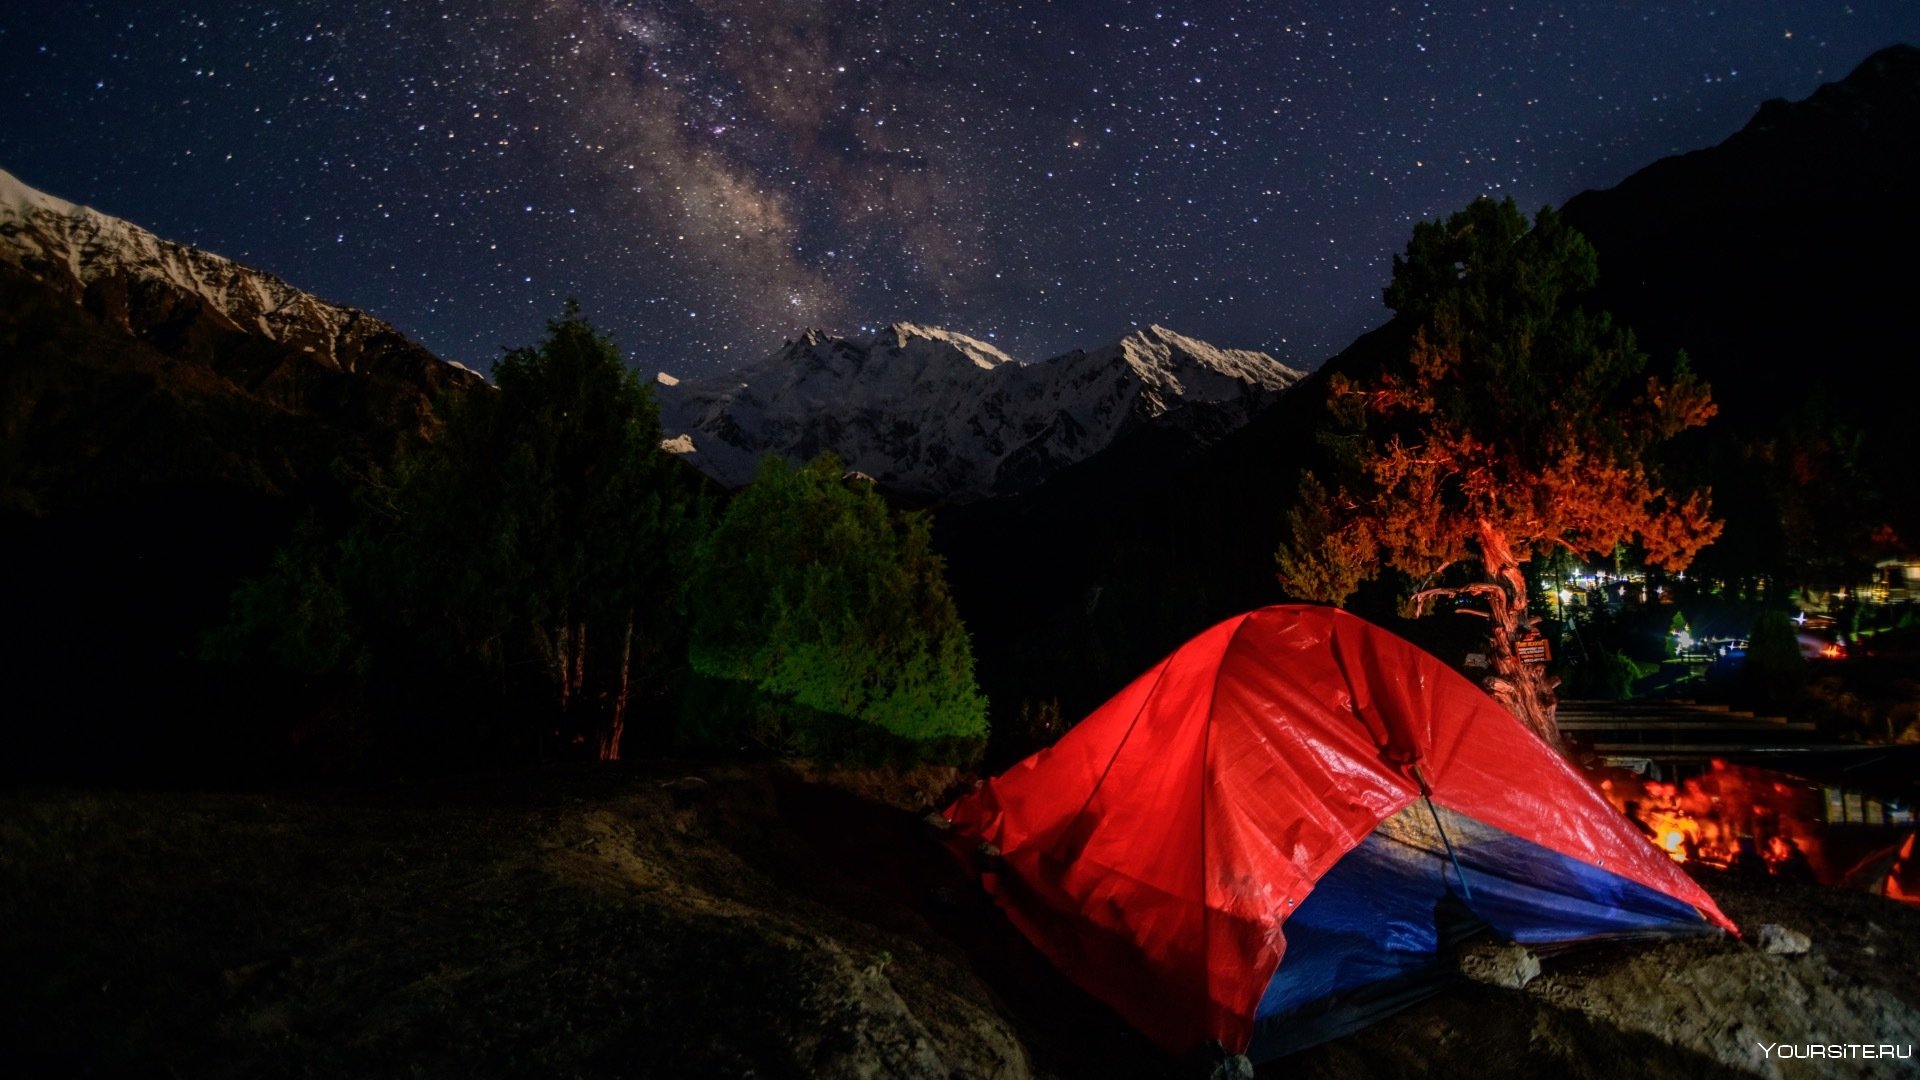 Night camp. Палатка ночью. Палатка в лесу ночью. Кемпинг ночью. Обои палатка ночью.